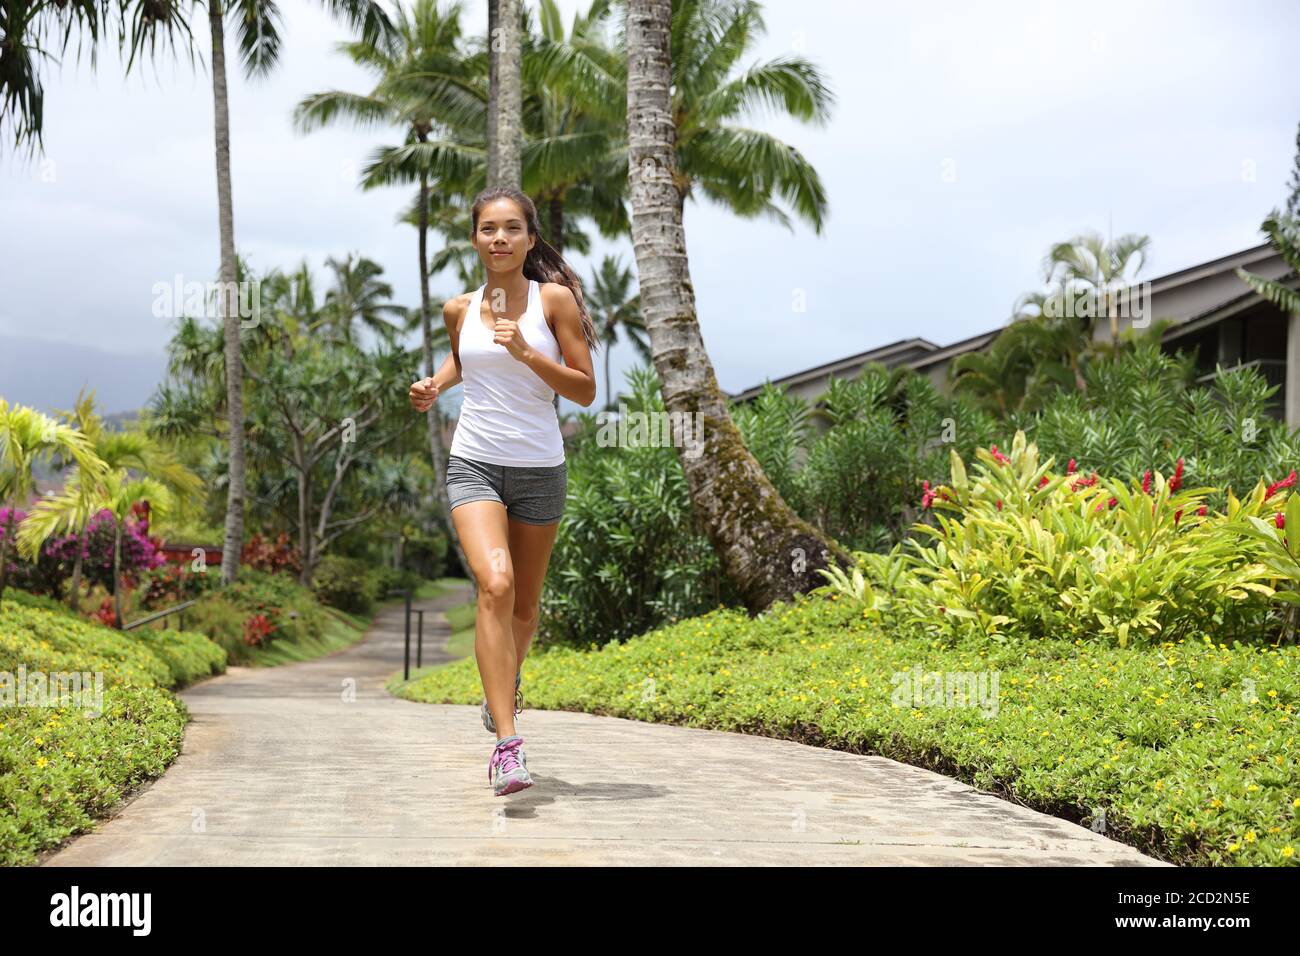 Glücklich gesund aktiven Lebensstil Mädchen Läufer laufen. Asiatische Frau Jogging Training Cardio für die Gesundheit. Stockfoto